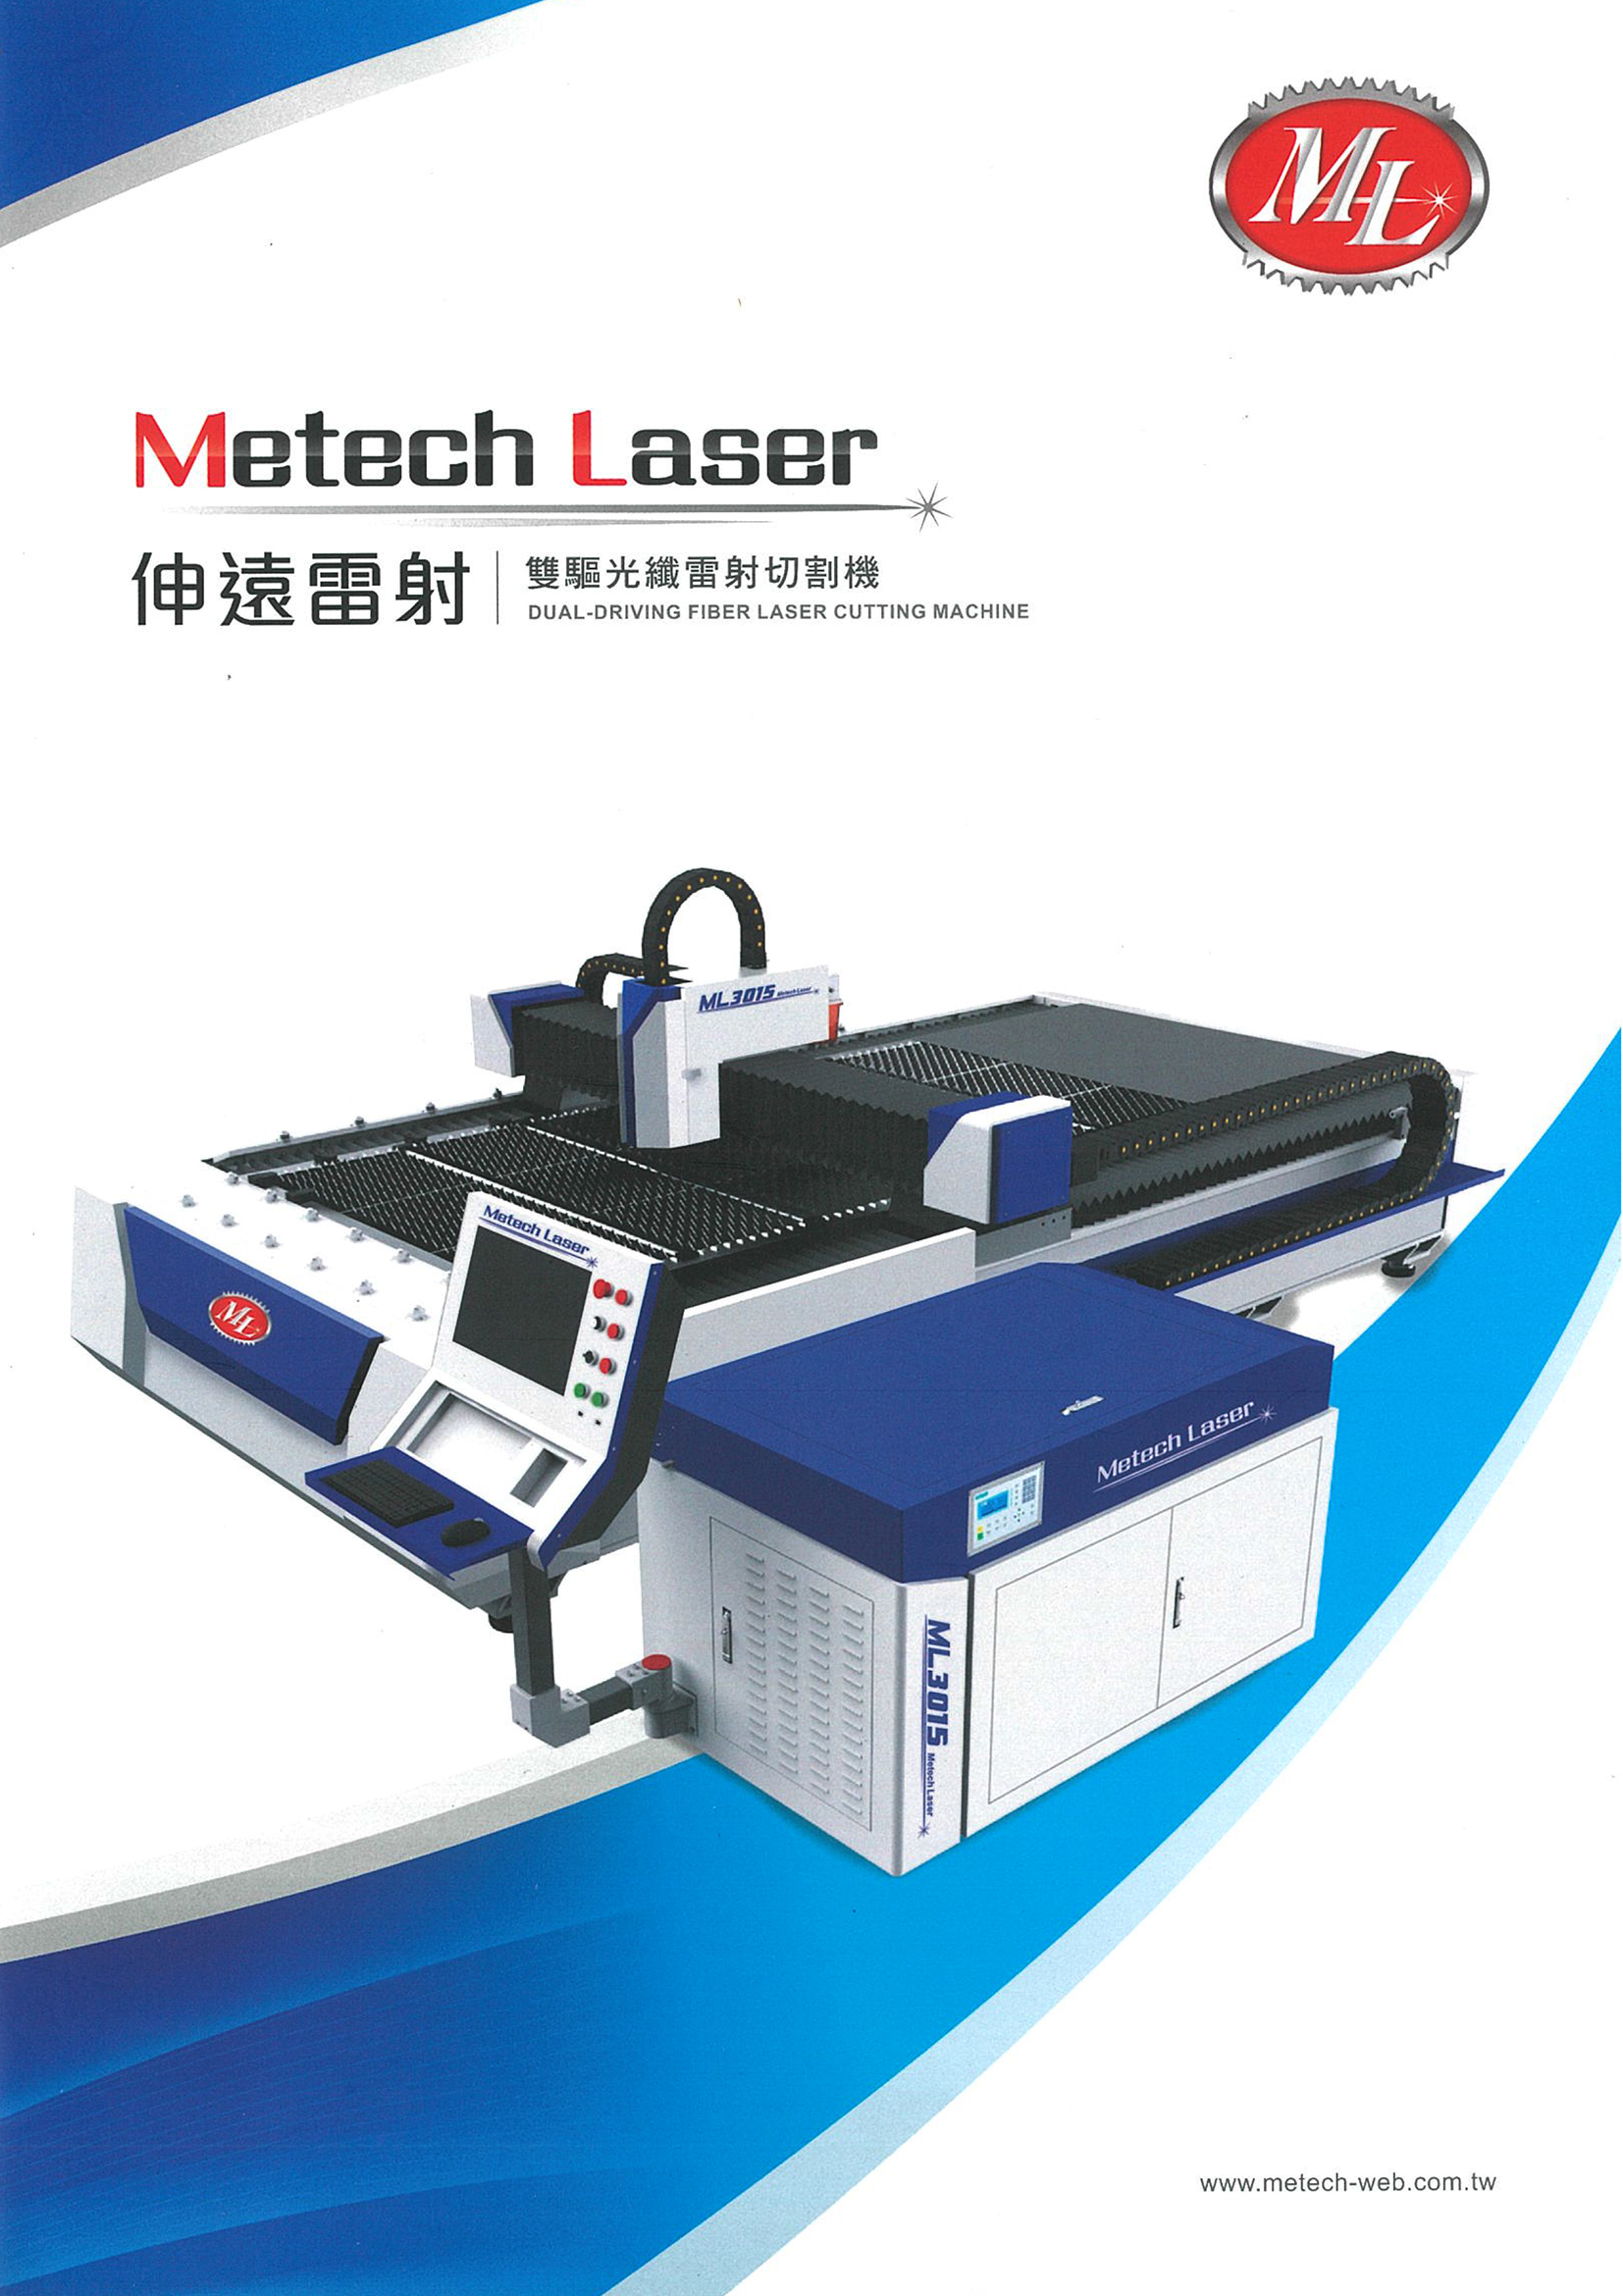 Metech Laser